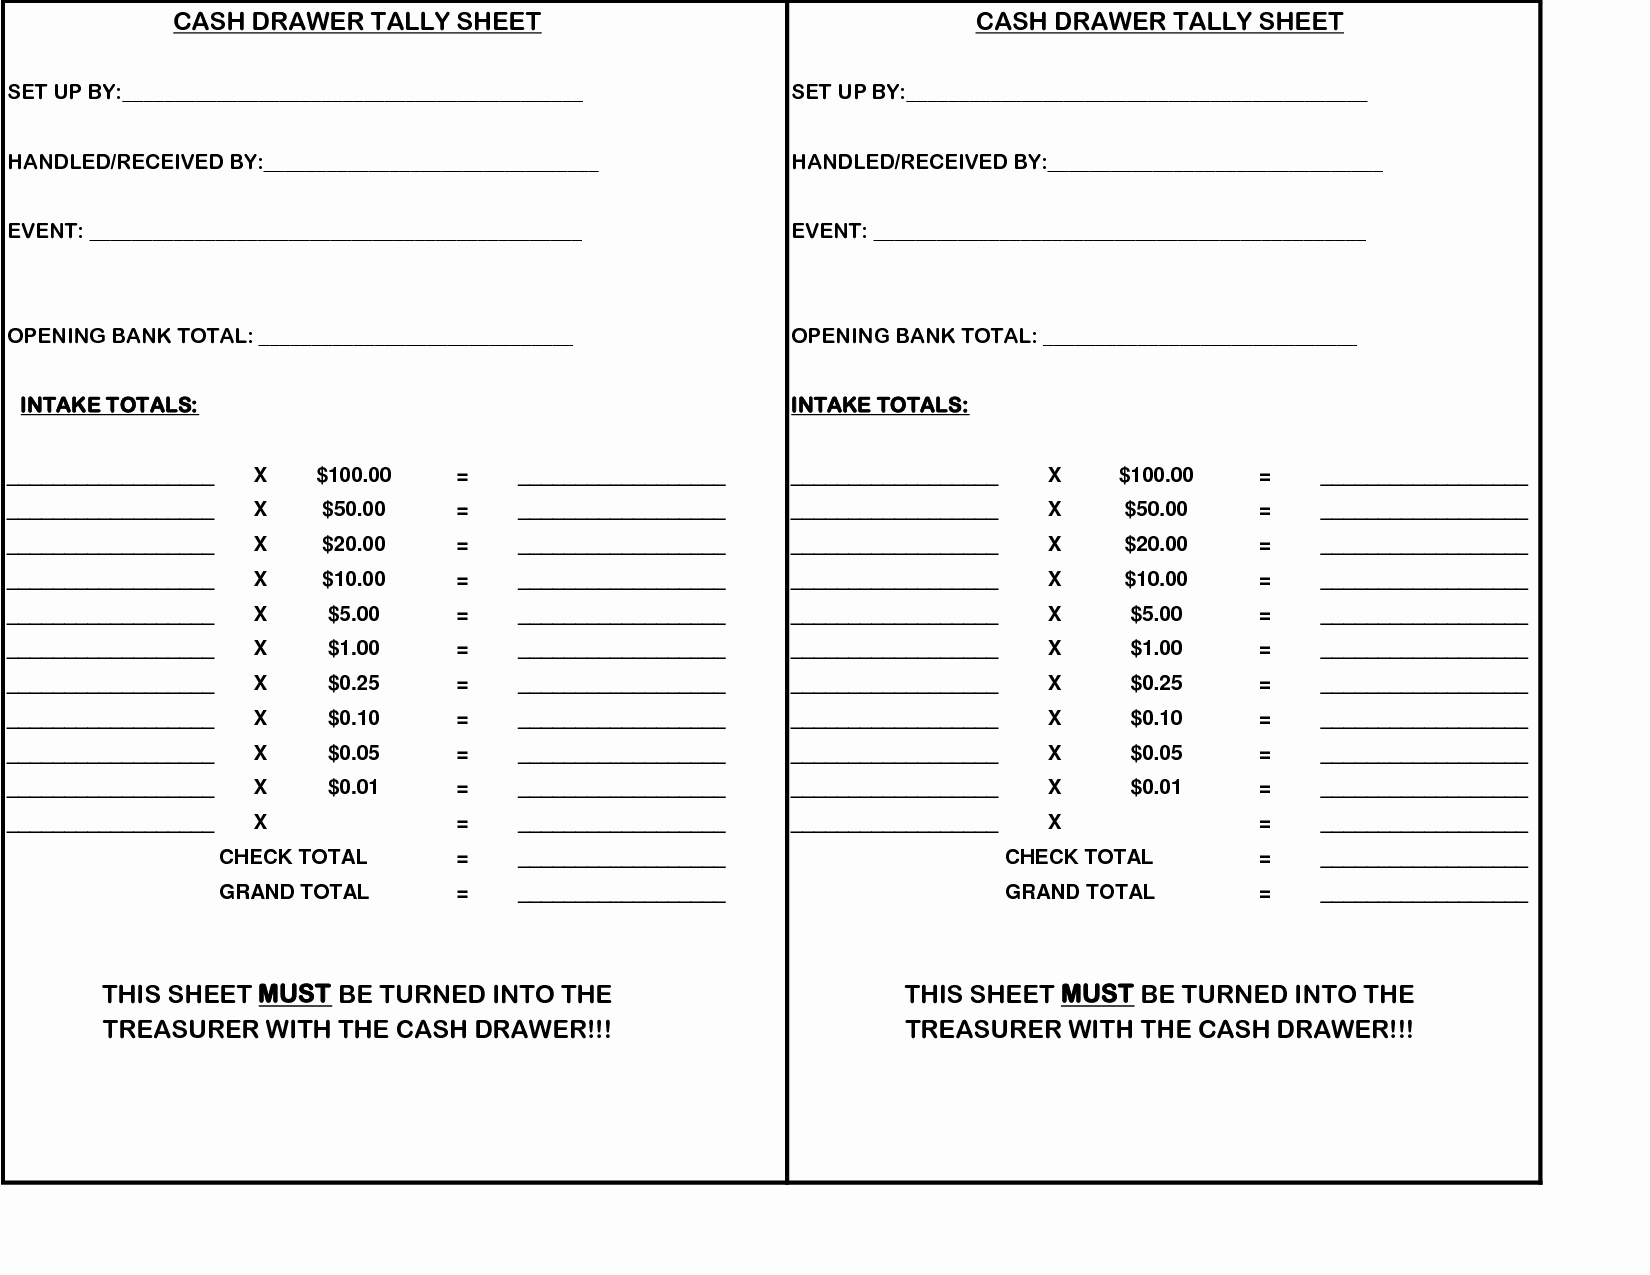 Cash Register Count Sheet Inspirational Cash Register Till Balance Shift Sheet In Out Template